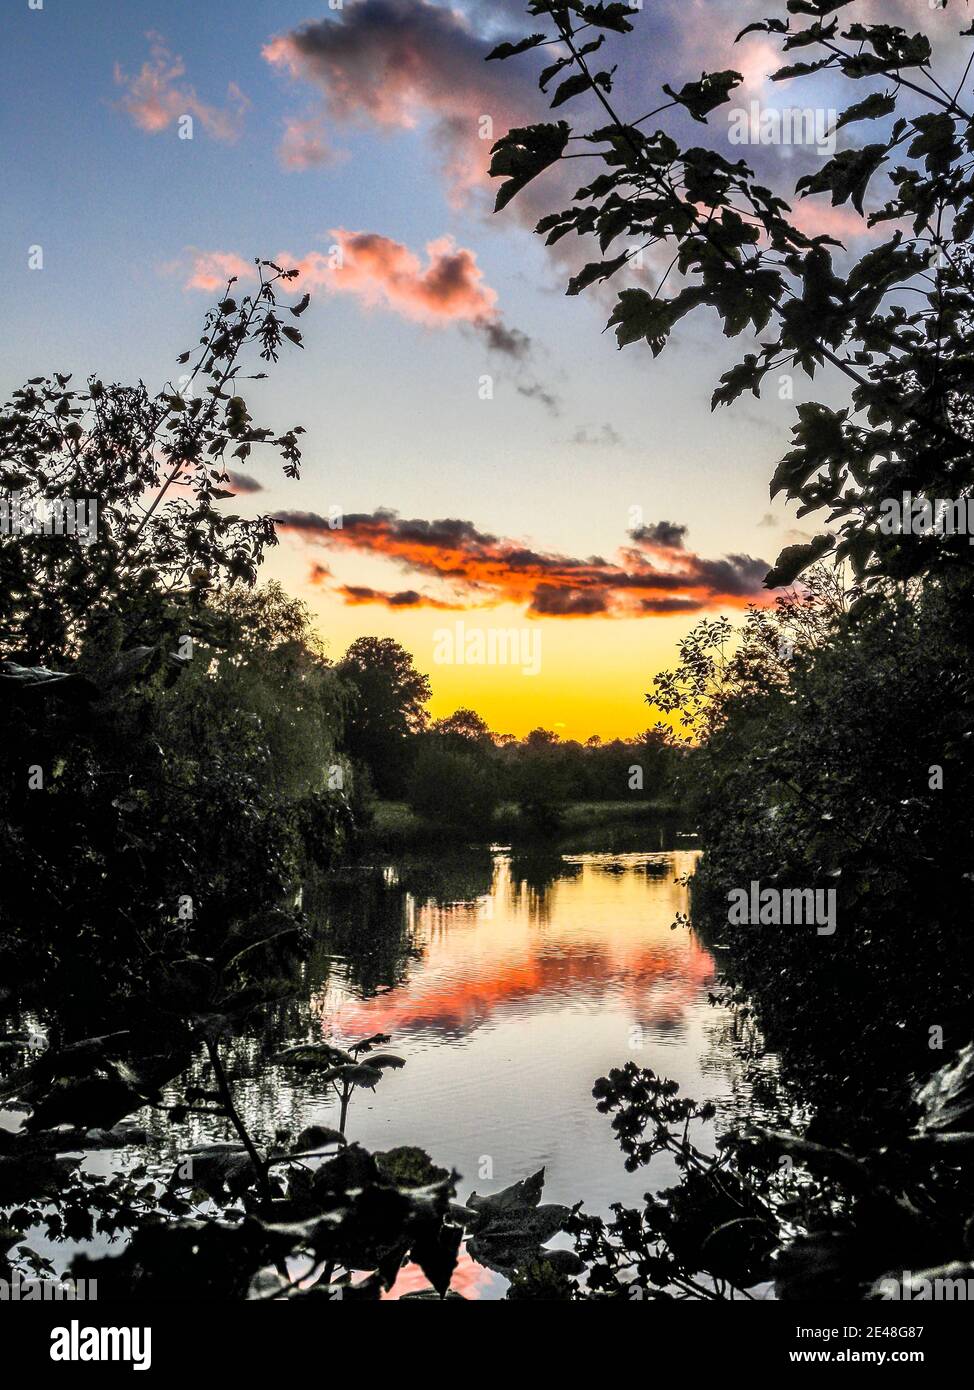 Glorioso tramonto sul fiume Kennett vicino Chilton Foliat, Hungerford nel Berkshire, Regno Unito. Foto Stock